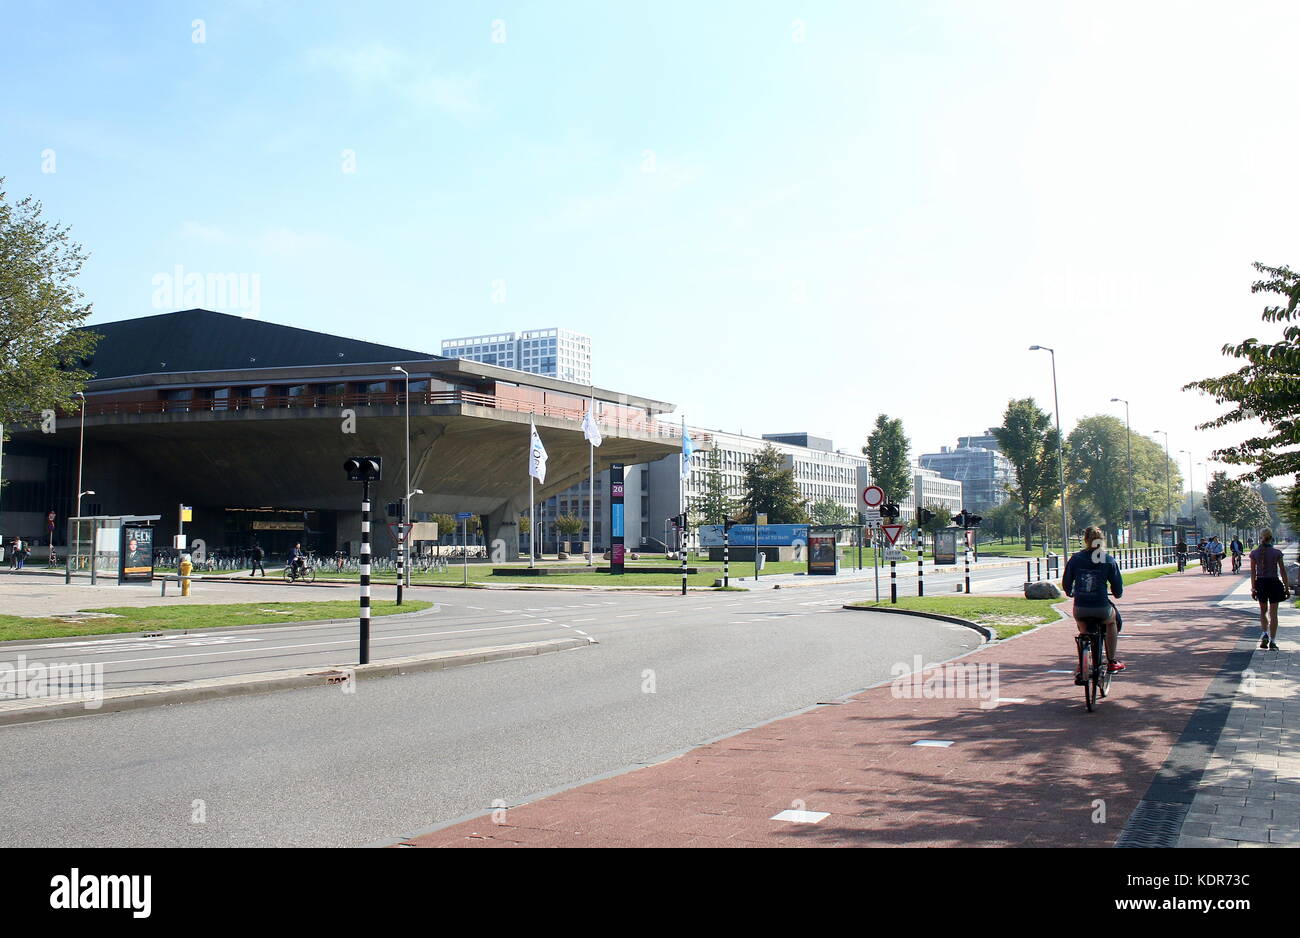 Aula Conference Center auf dem Campus der Technischen Universität Delft, Niederlande. Brutalist Architektur aus den 1960er Jahren. Stockfoto